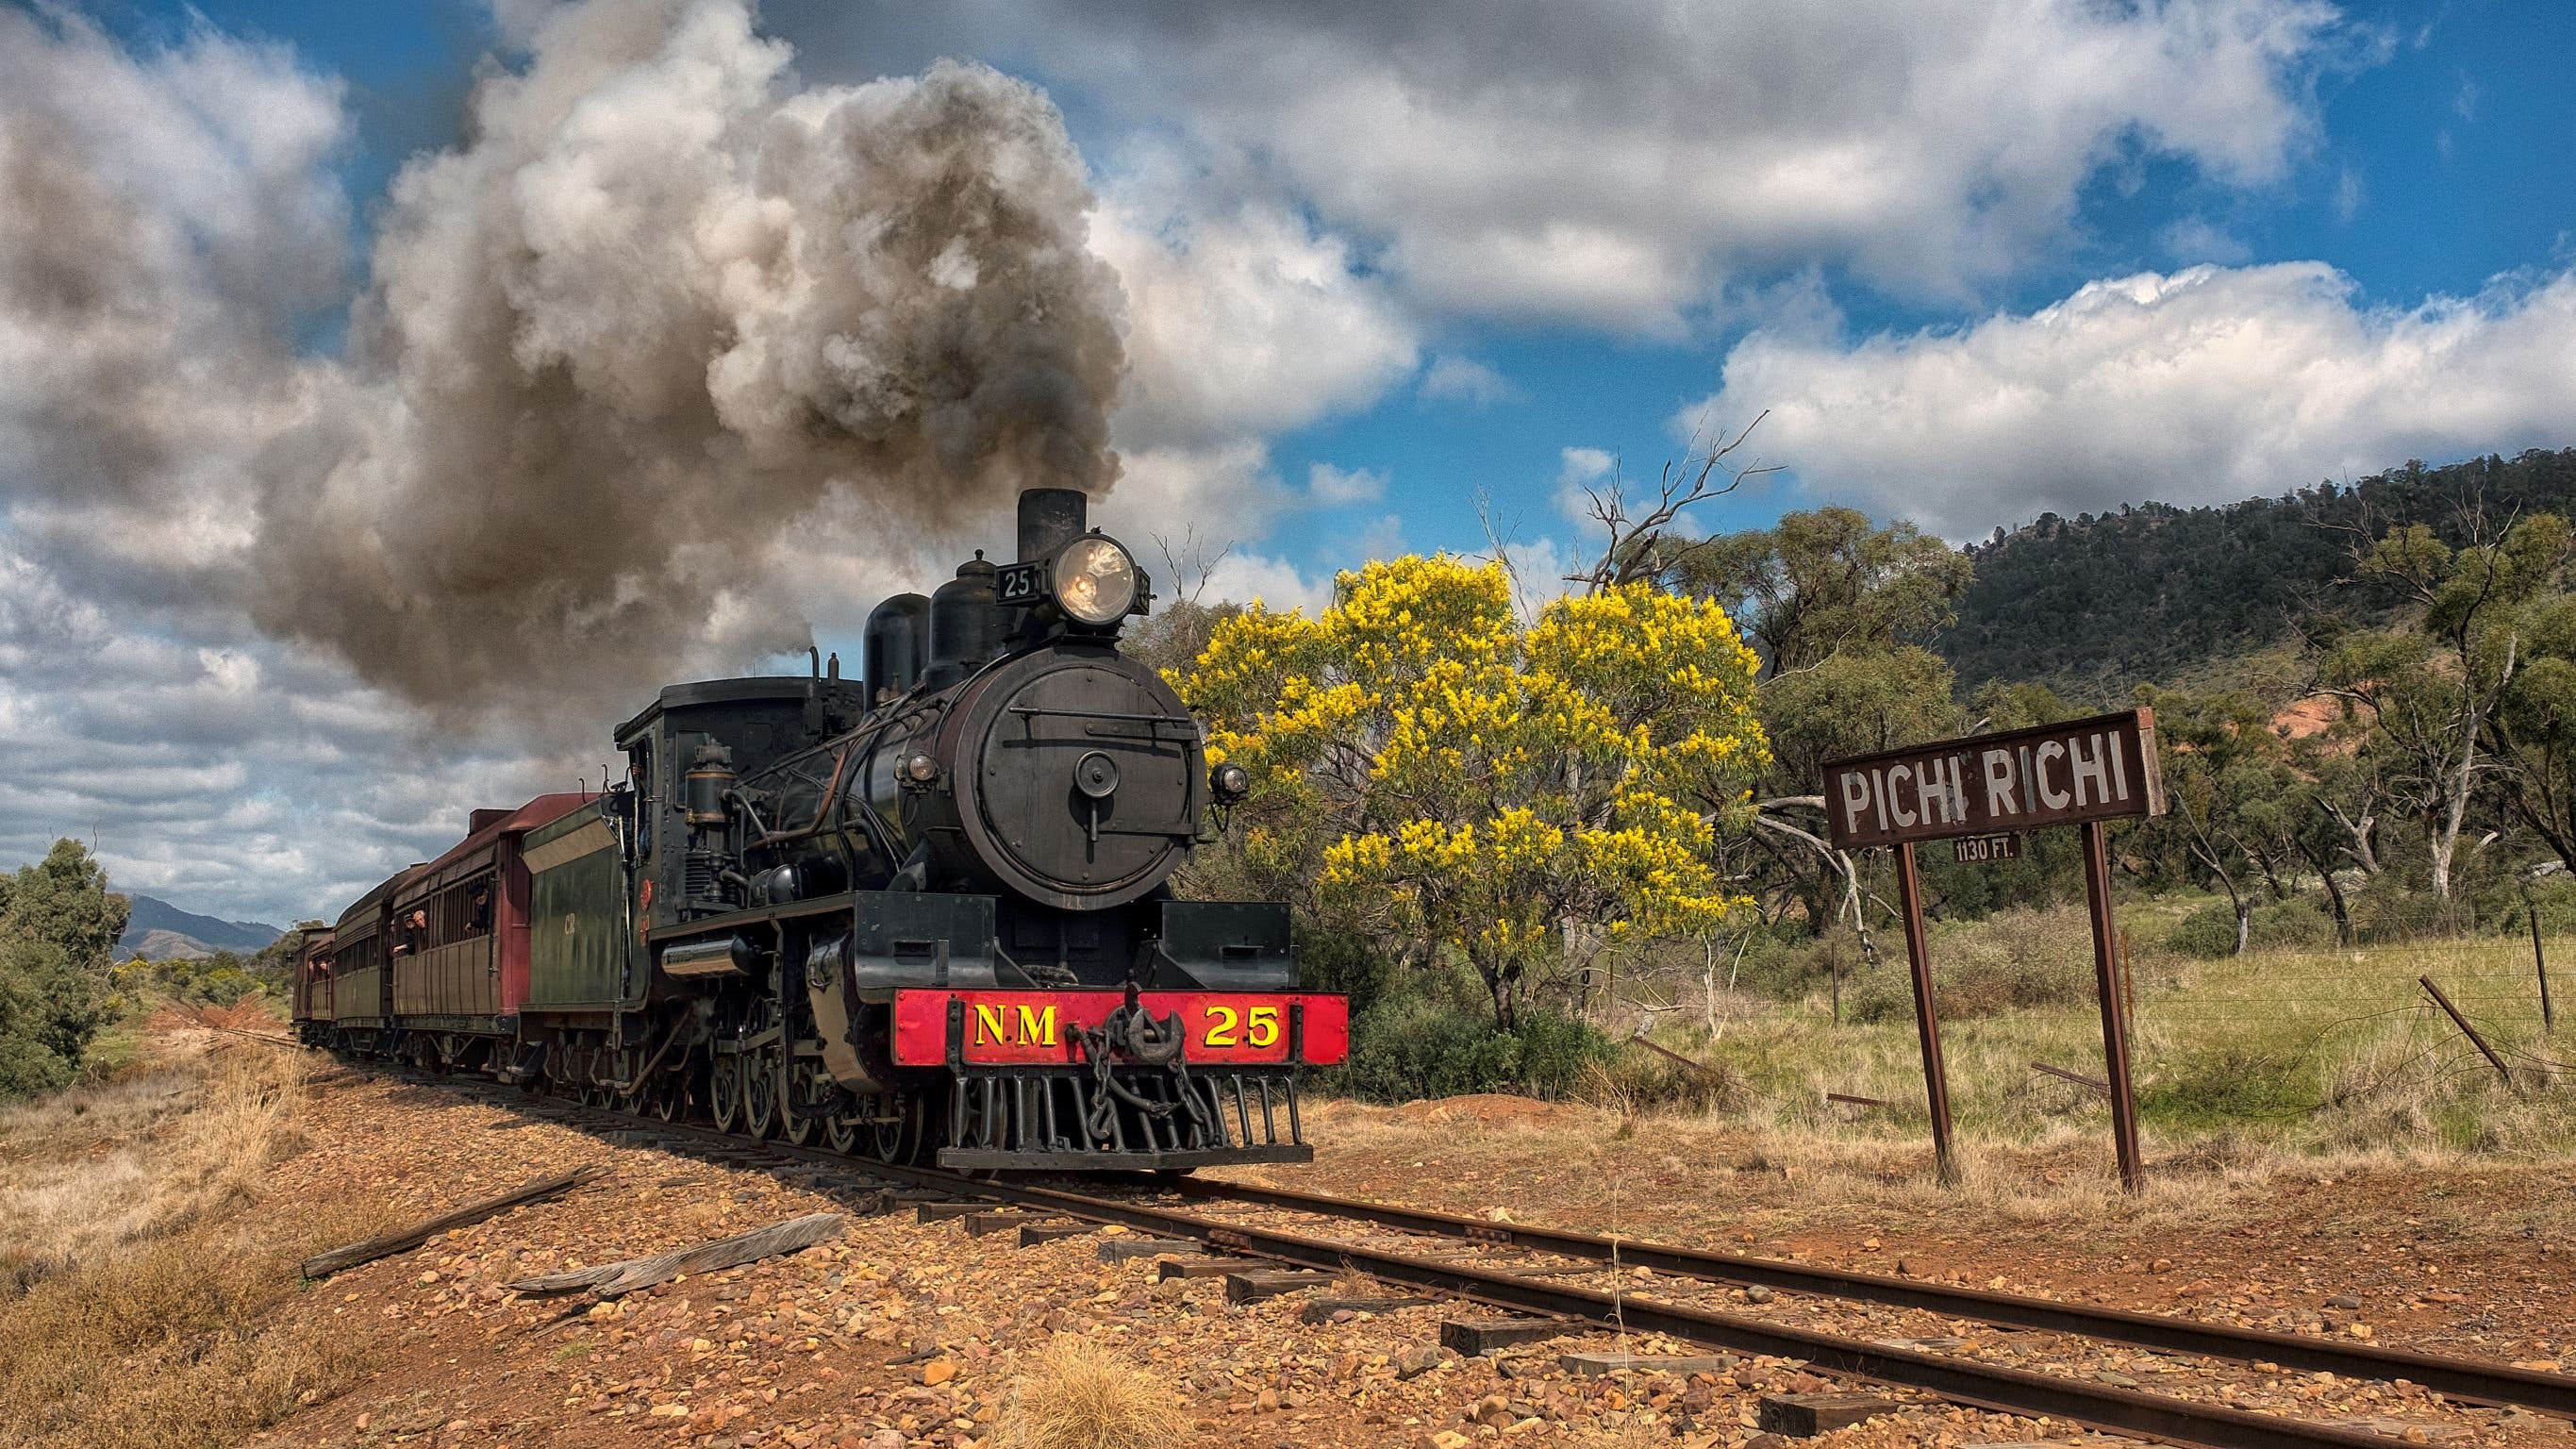 Pichi Richi Railway - Attractions Melbourne